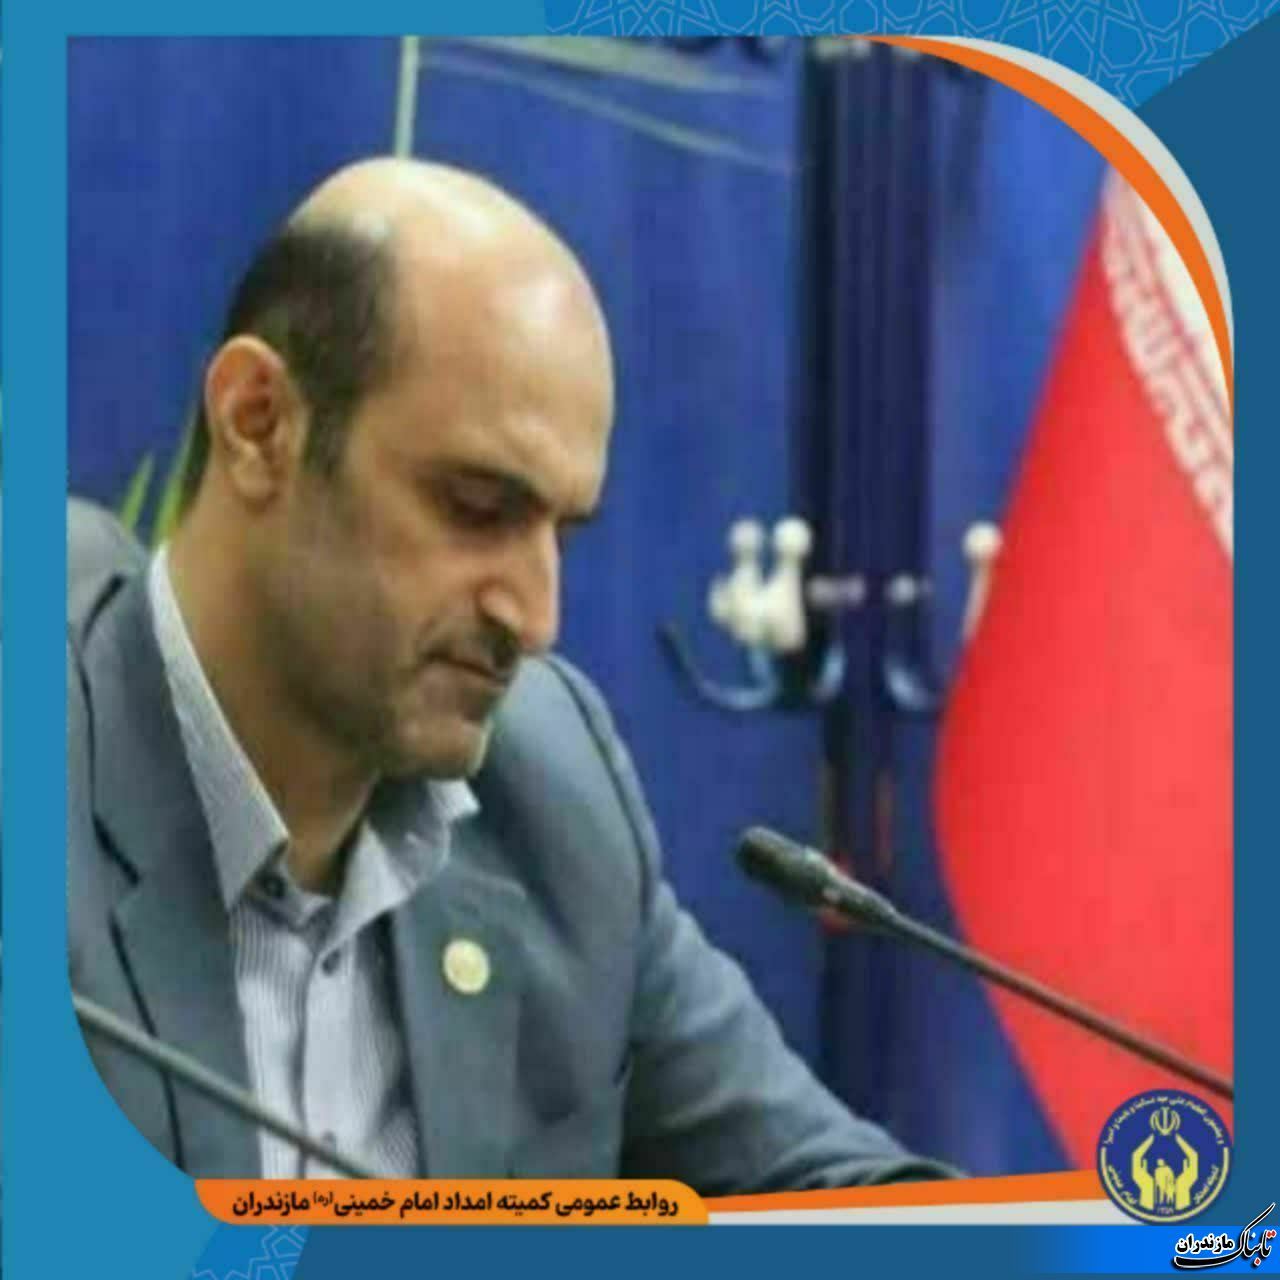 اهدا ۴۰سری جهیزیه به نوعروسان تحت حمایت کمیته امداد شهرستان قائمشهر